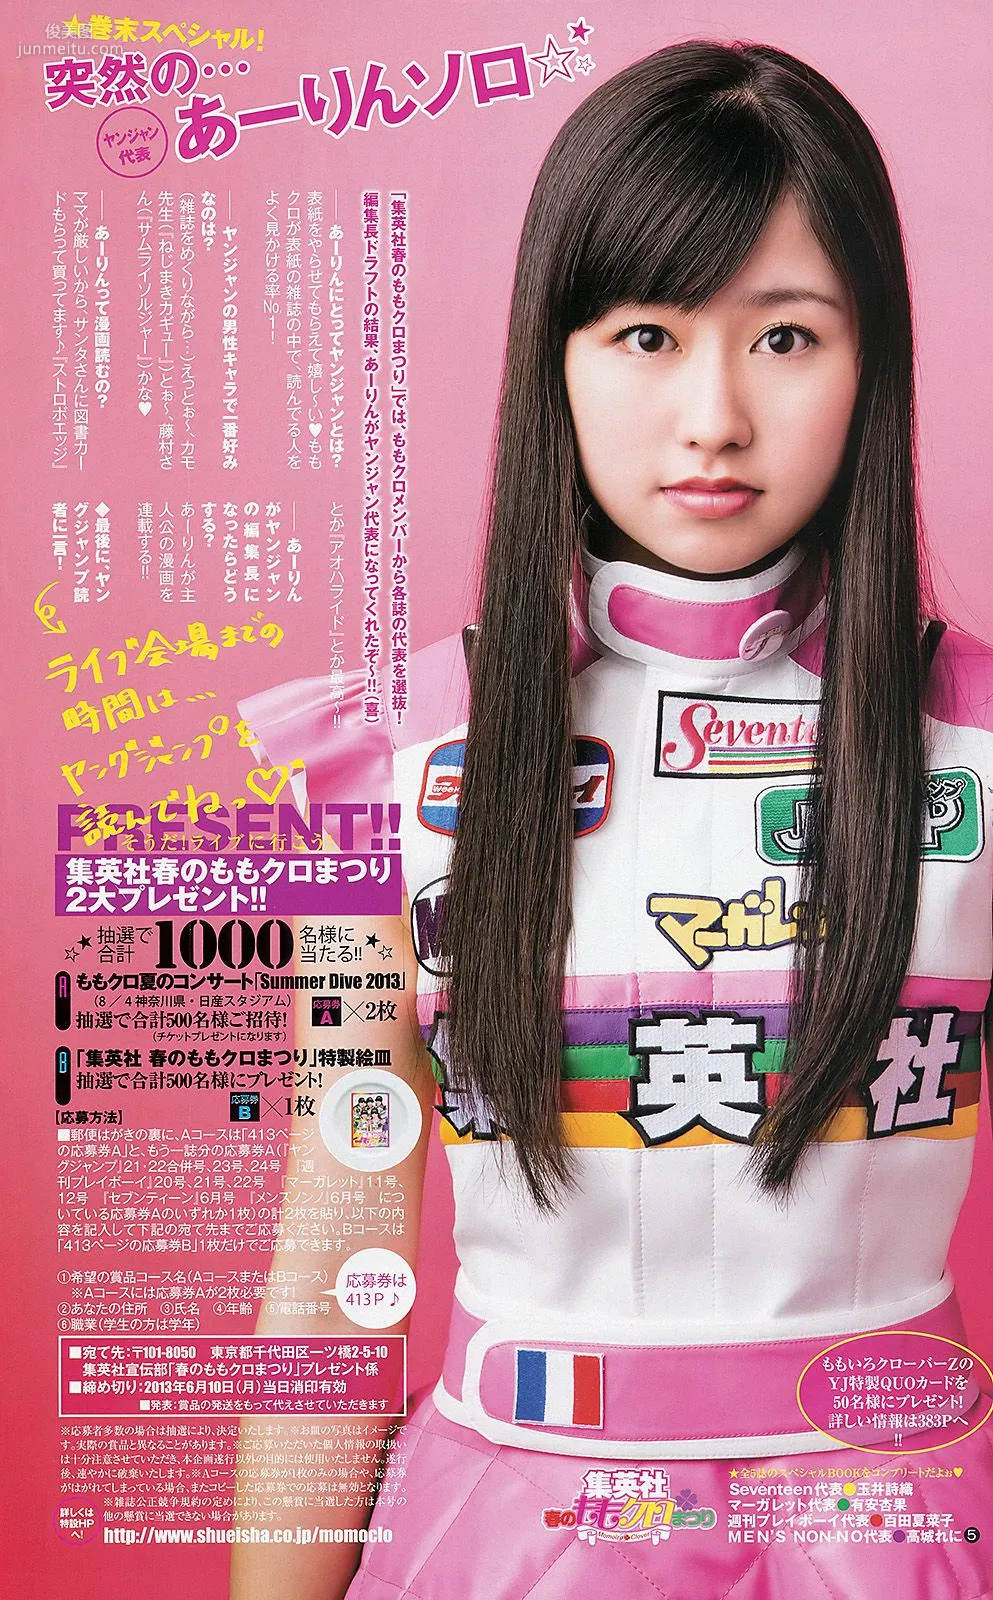 ももいろクローバーZ 相楽樹 たわコレ-たわわコレクション- [Weekly Young Jump] 2013年No.21-22 写真杂志6